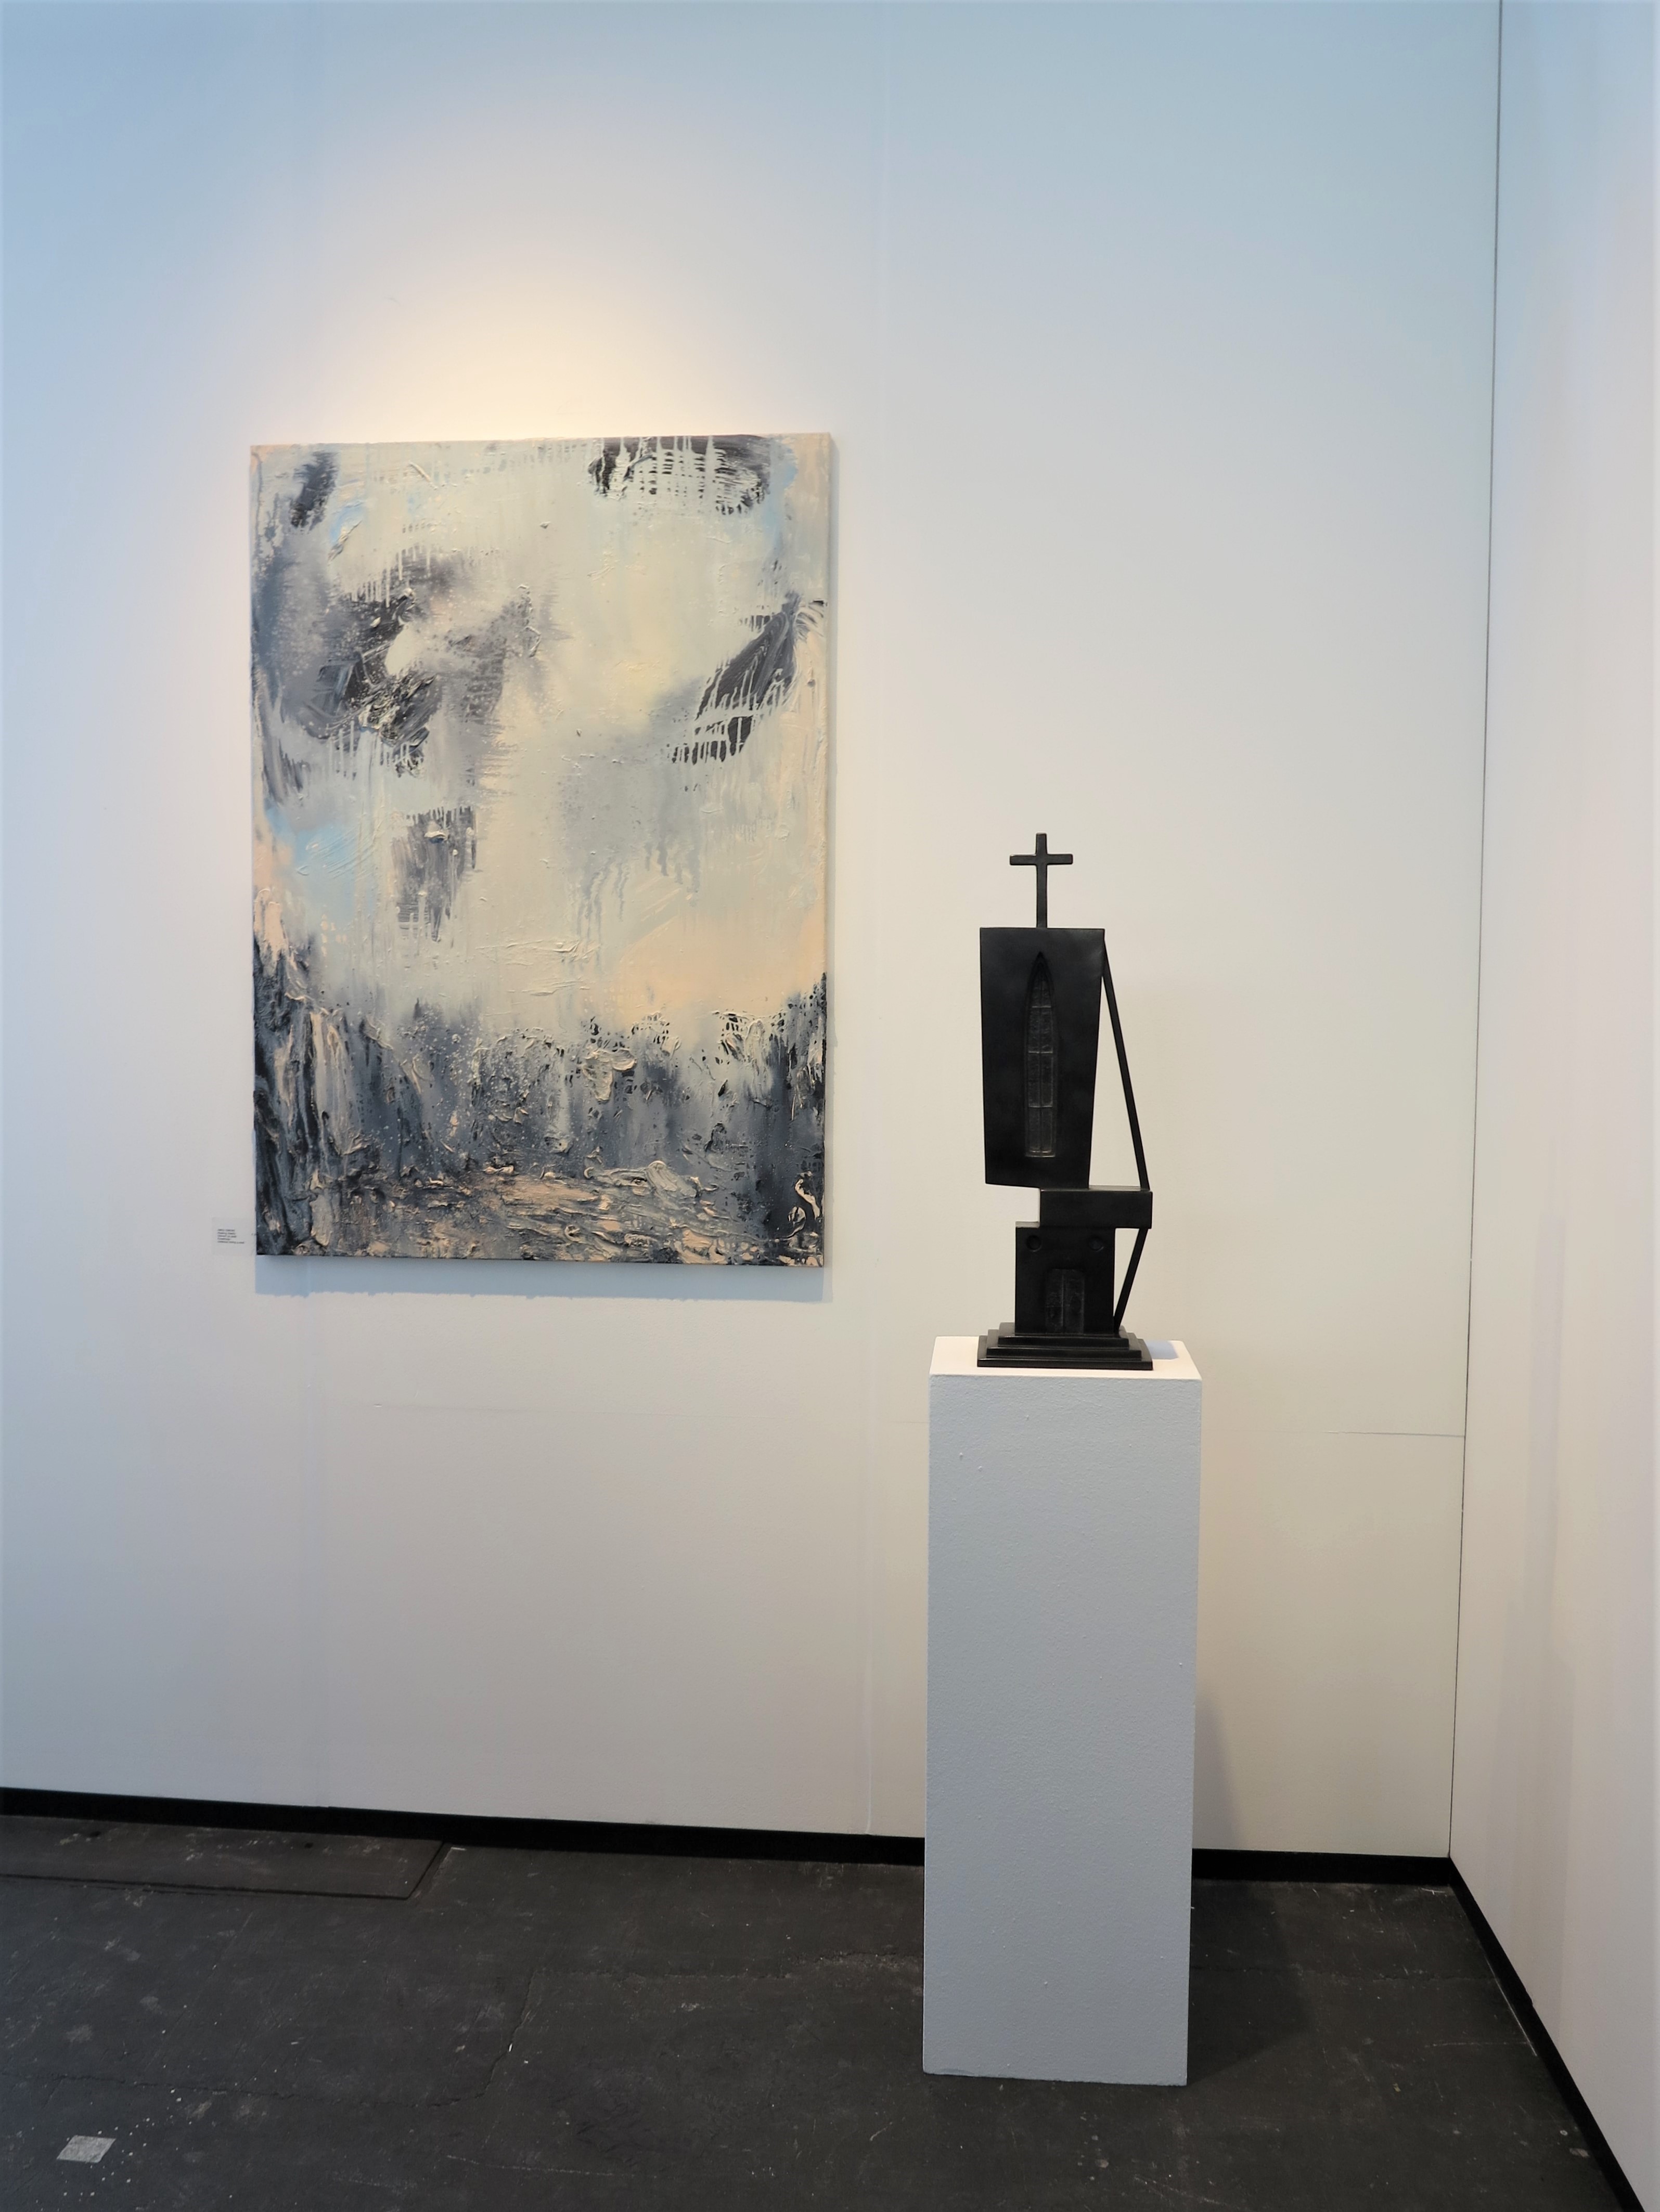 KunstRAI 2021, represented by Jan van Hoof Galerie, Amsterdam (2021)